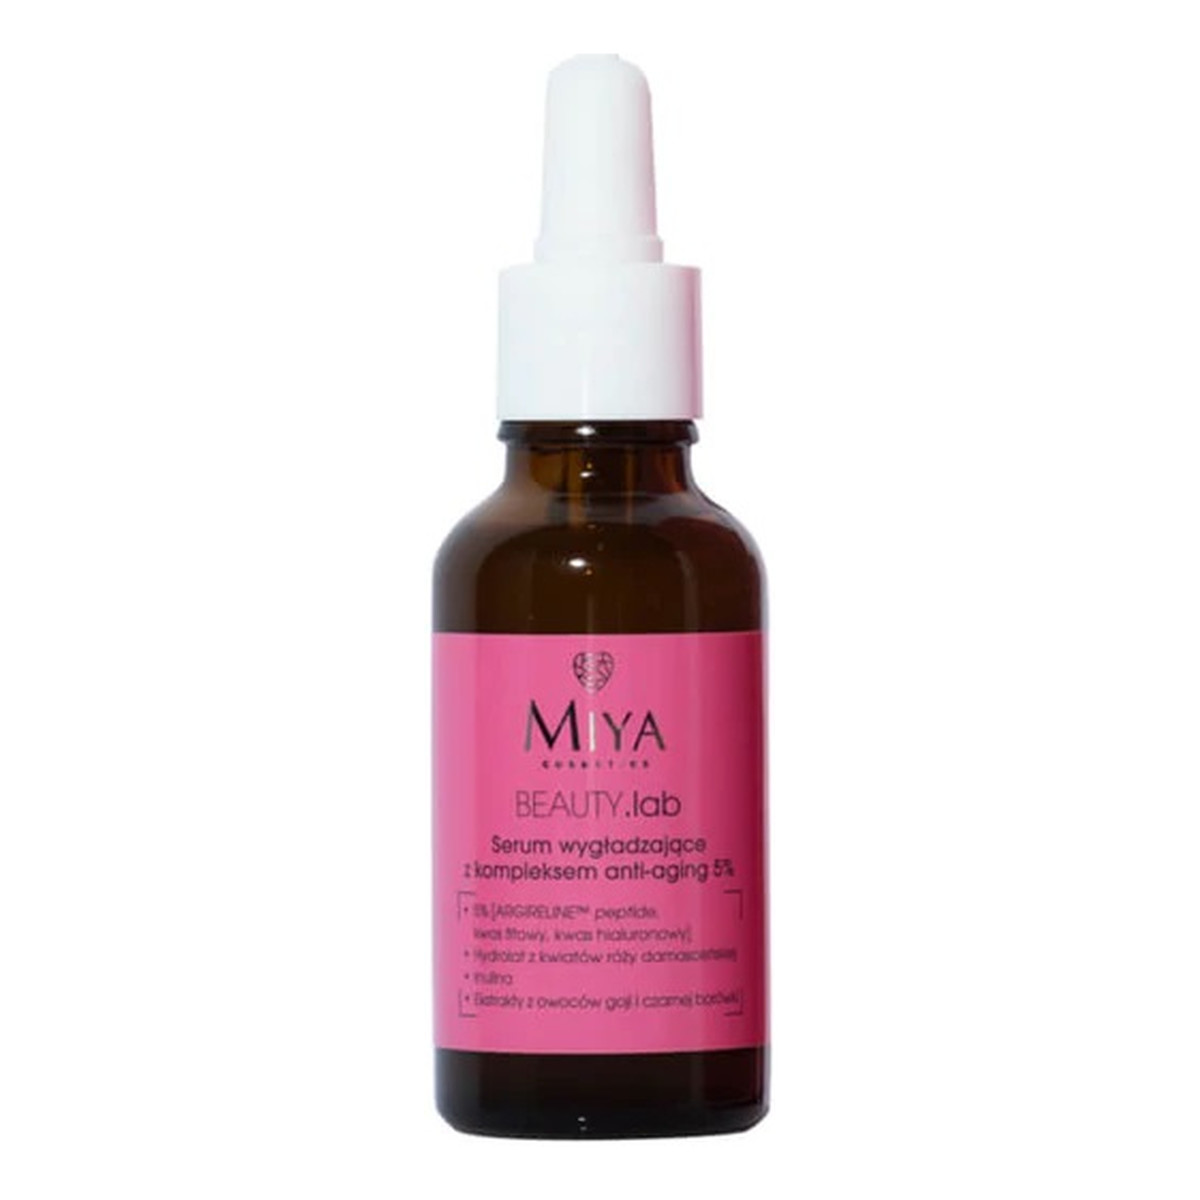 Miya Cosmetics Beauty lab serum wygładzające z kompleksem anti-aging 5% 30ml